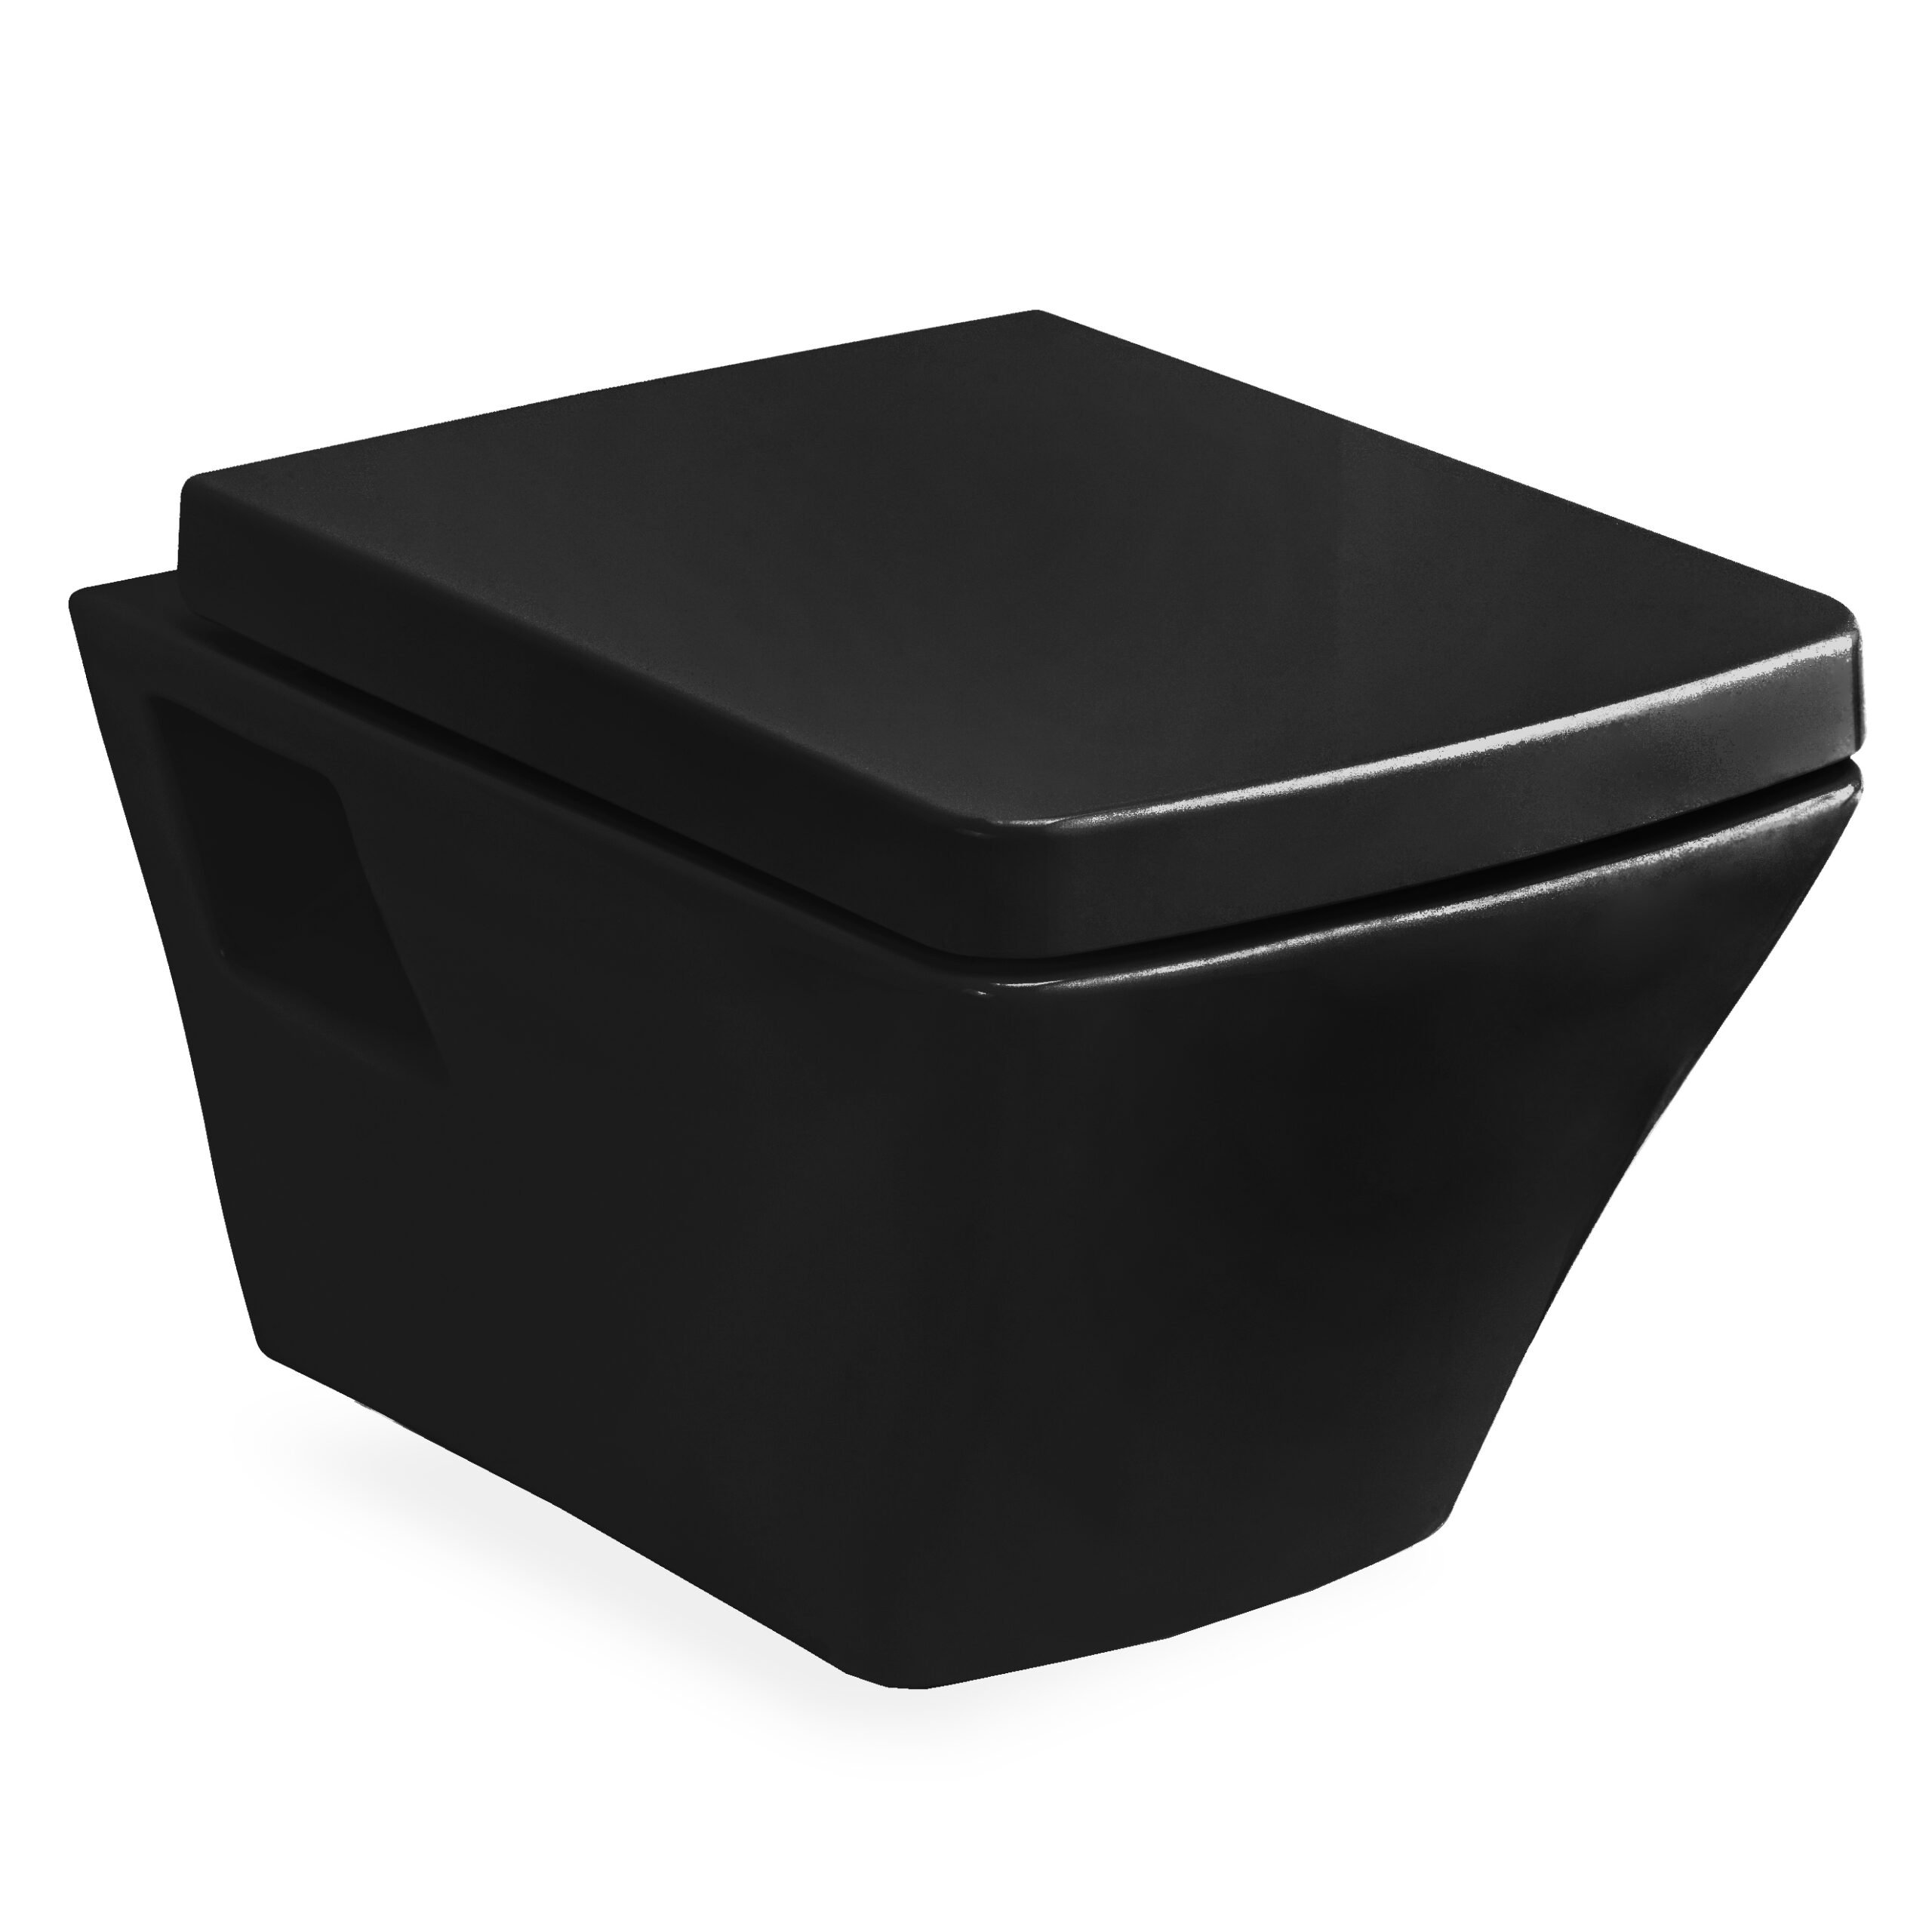 TEO black унитаз 53*35,5*40см подвесной в комплекте с сиденьем slow-closing 13-88-422black